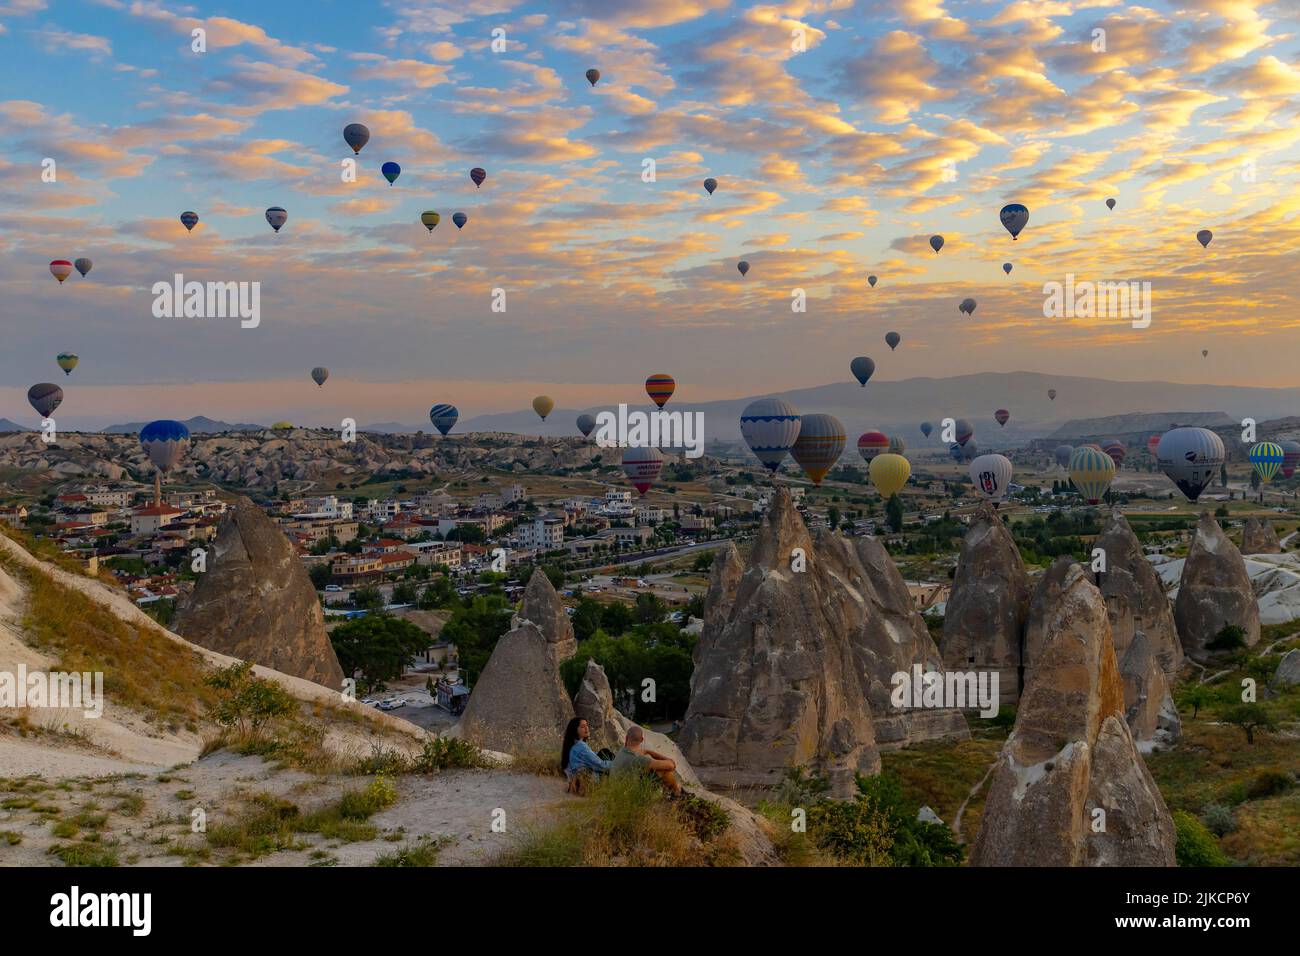 GÖREME/TURQUIE - 30 juin 2022: Les touristes regardent le spectacle des ballons d'air chaud volant au-dessus d'eux à l'aube. Banque D'Images